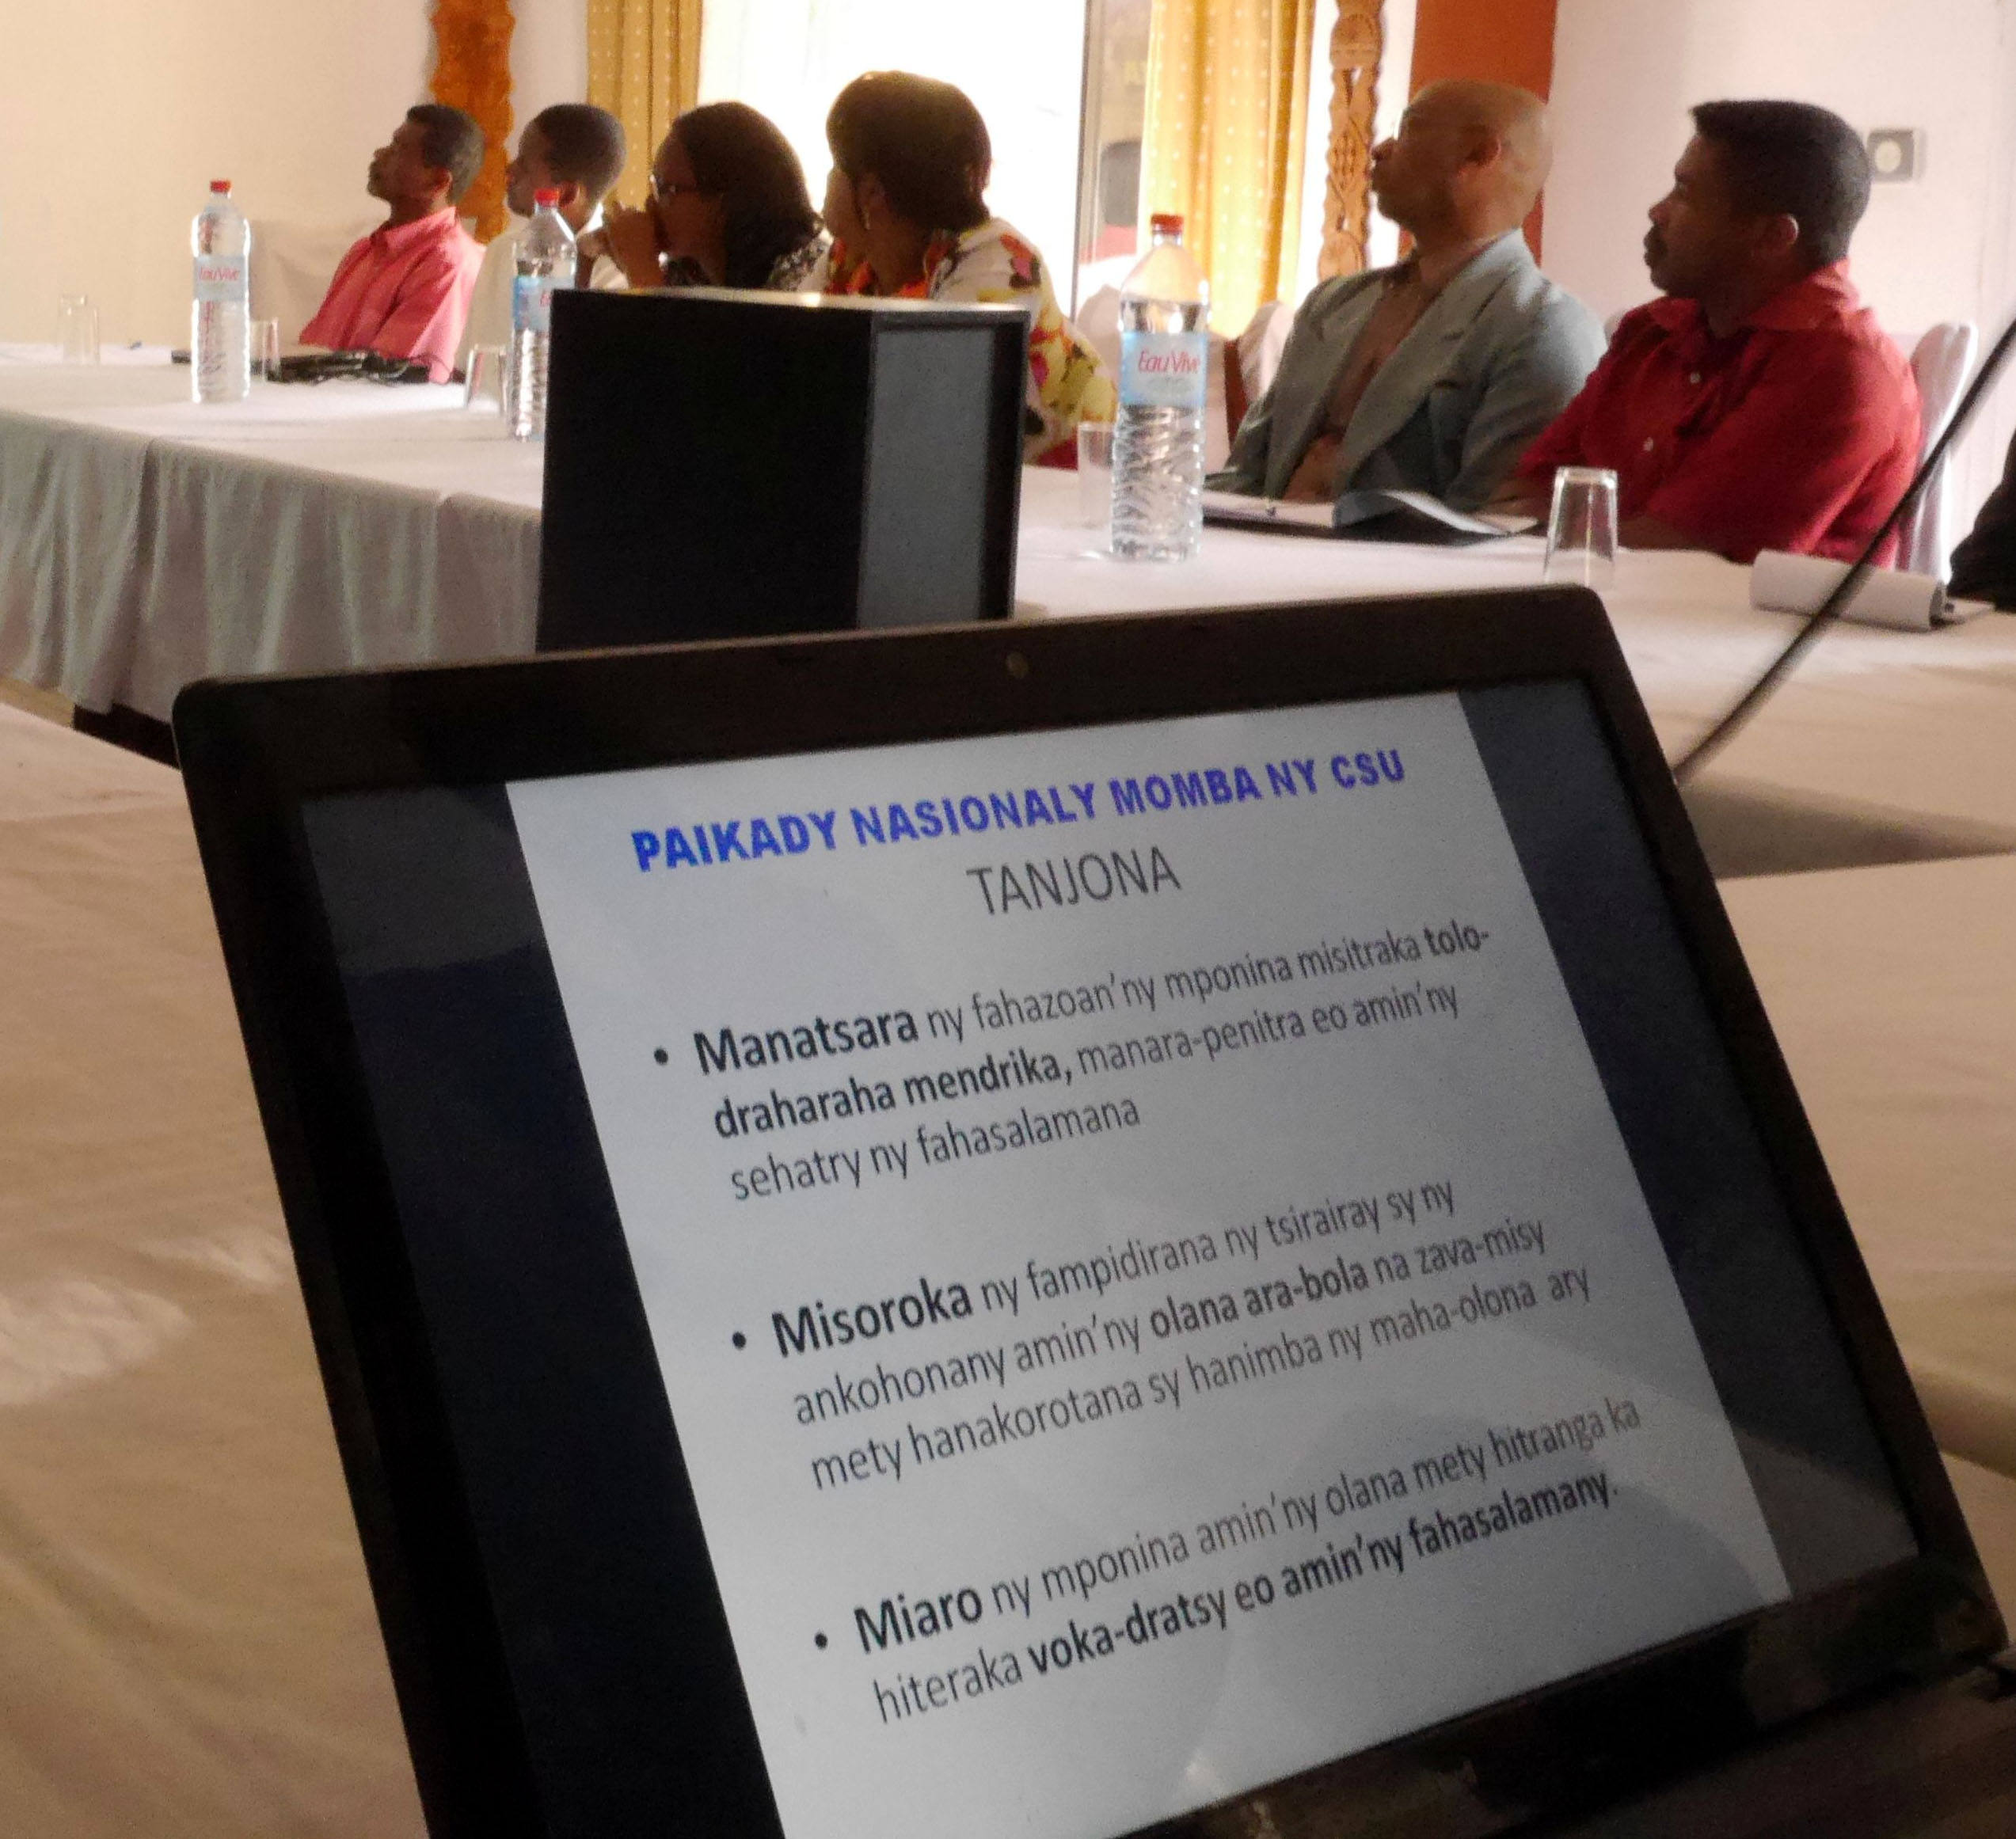 Le ministère de la santé publique de Madagascar a lancé son programme de santé publique universelle en organisant une tournée d’information dans les trois districts (Vatomandry, Faratsiho, Manandriana) où la mise en œuvre du projet pilote est prévue.